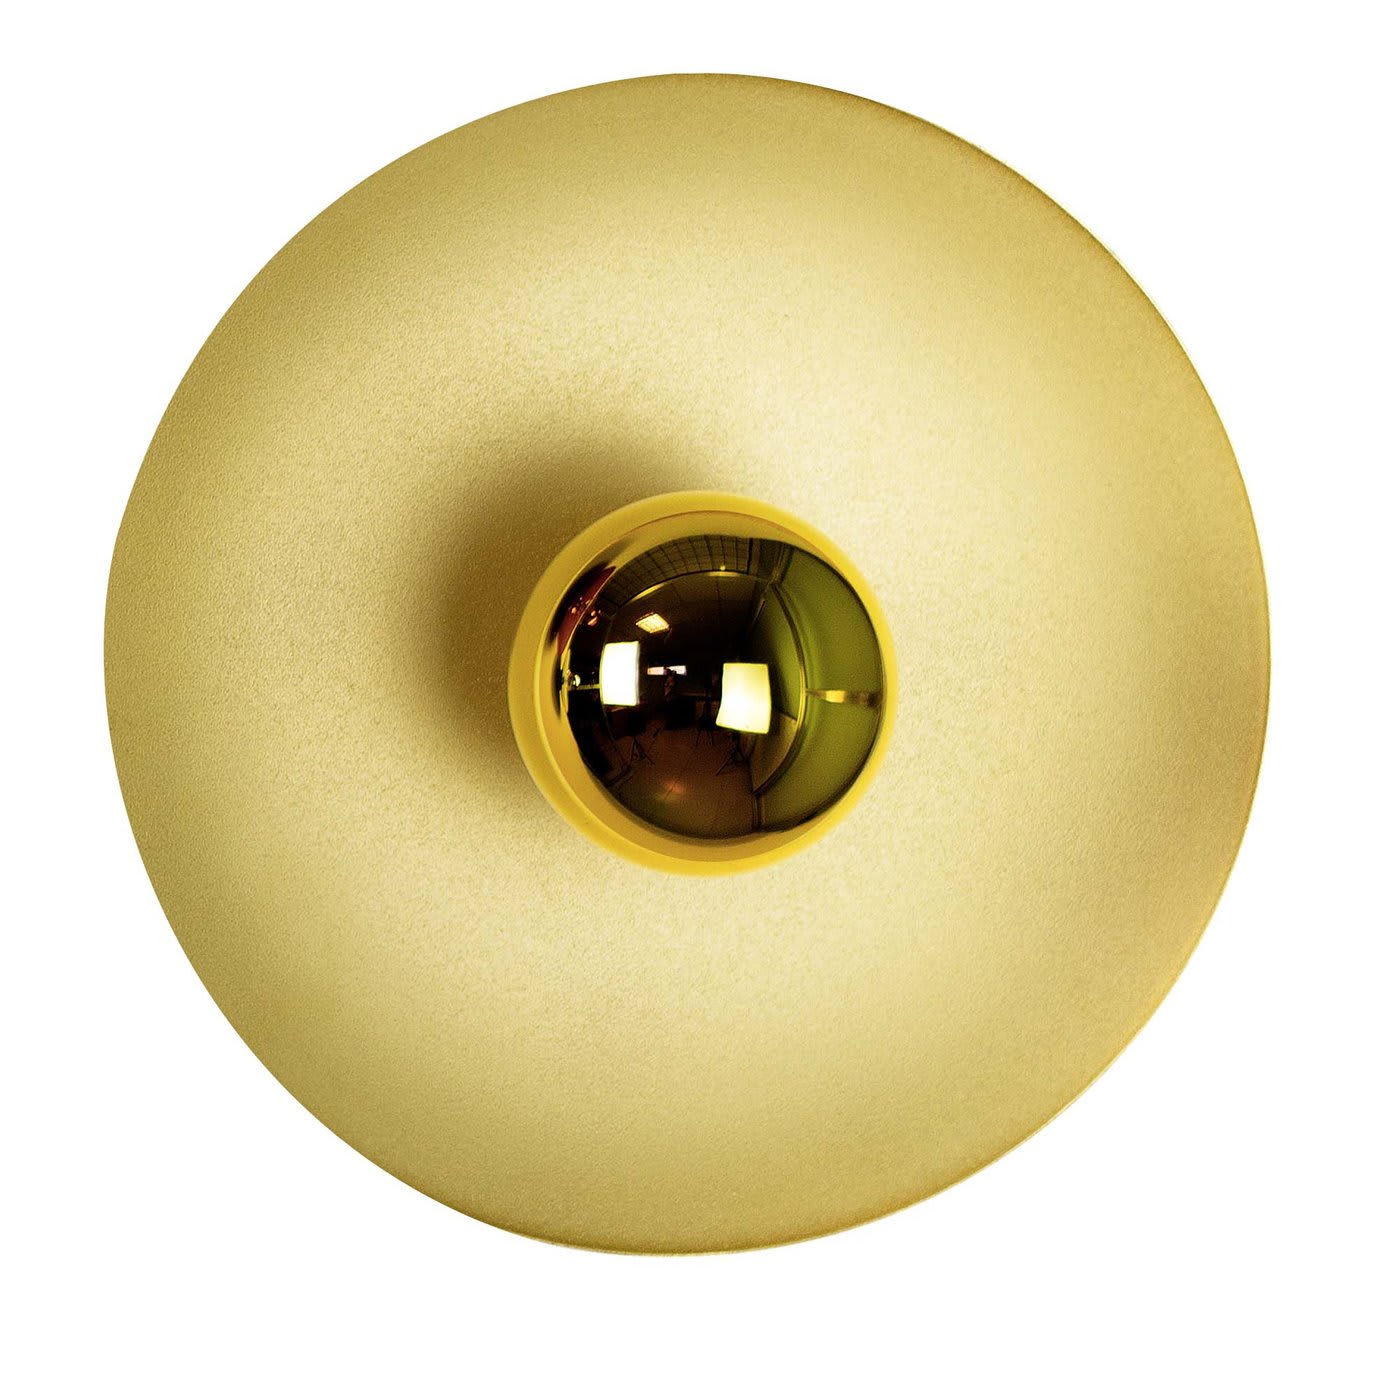 Astro pearl gold wall lamp - Interia